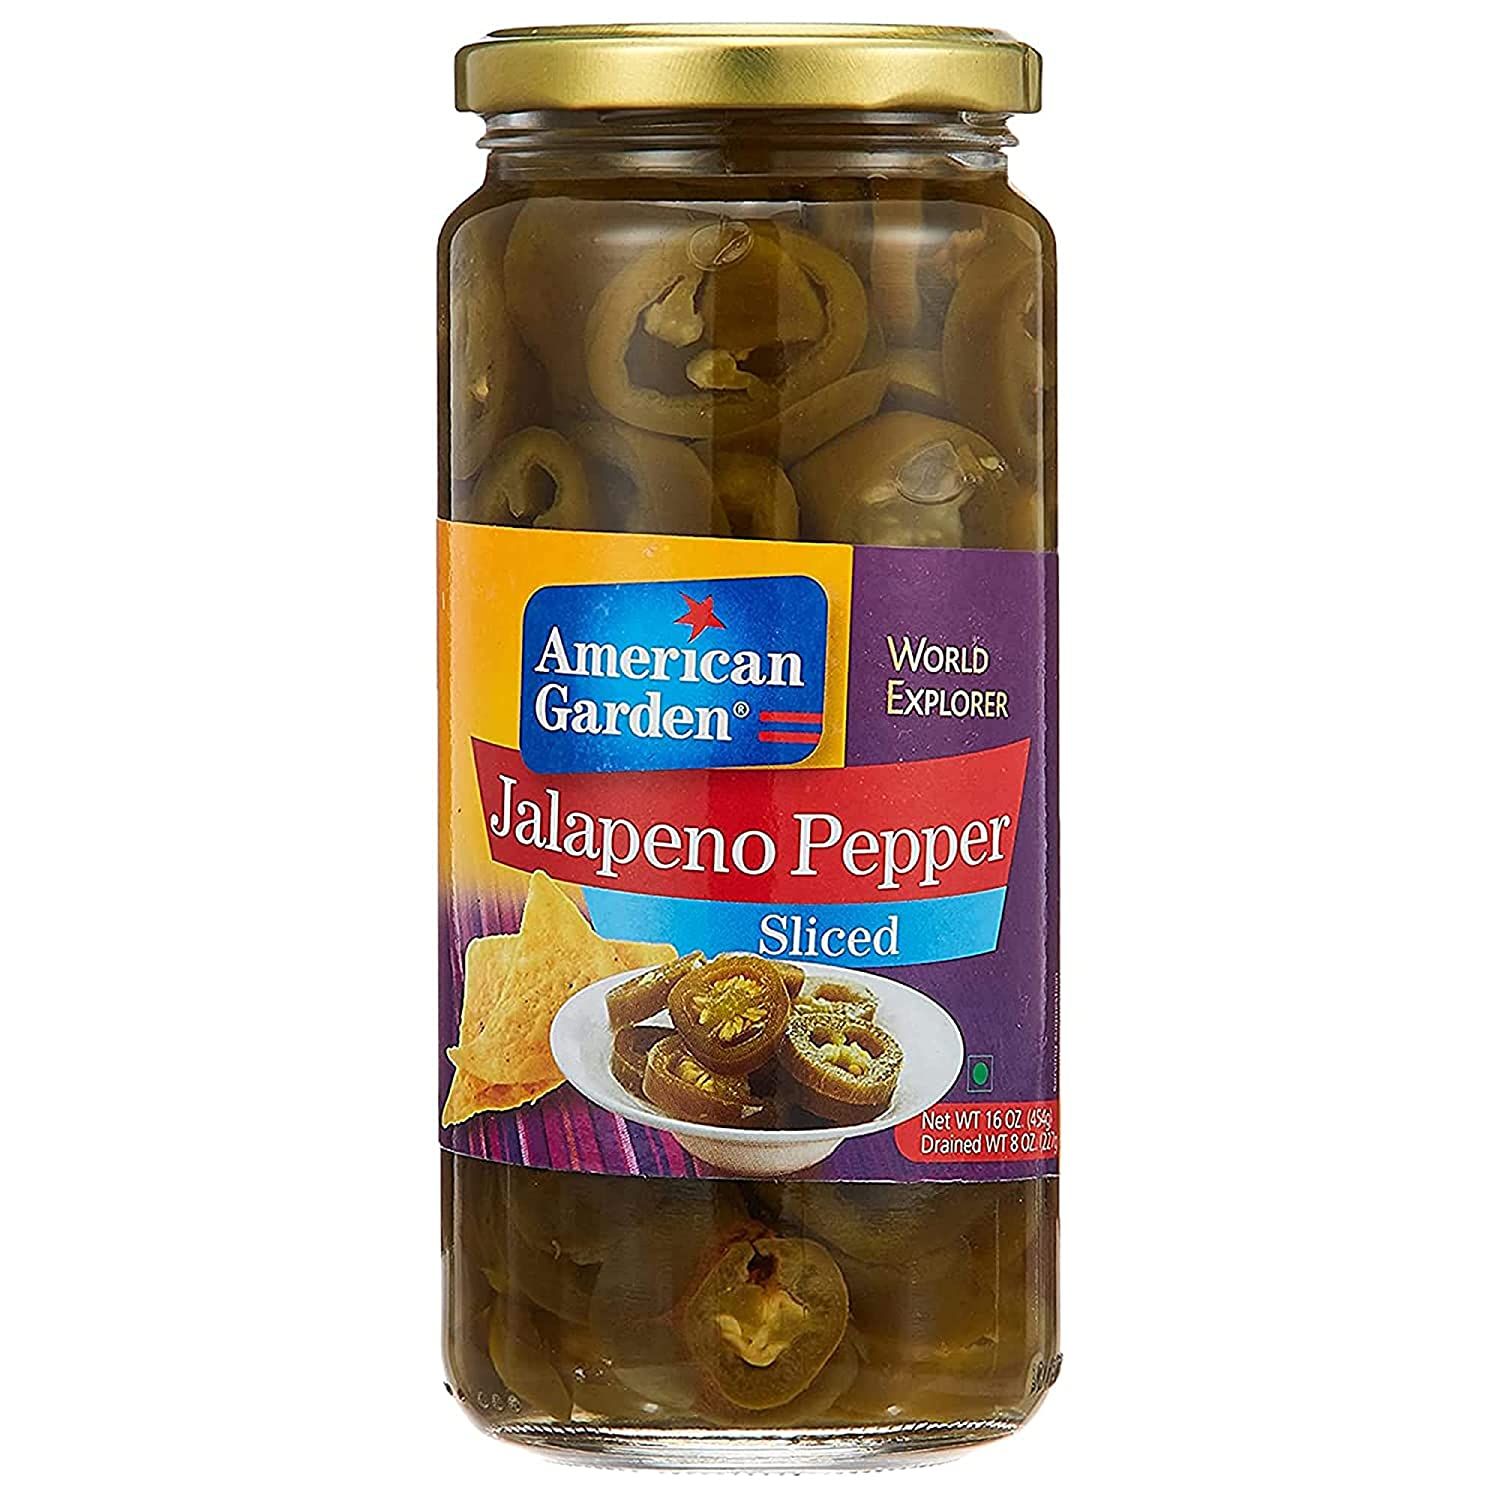 American Garden Jalapeno Pepper Sliced Olives Image